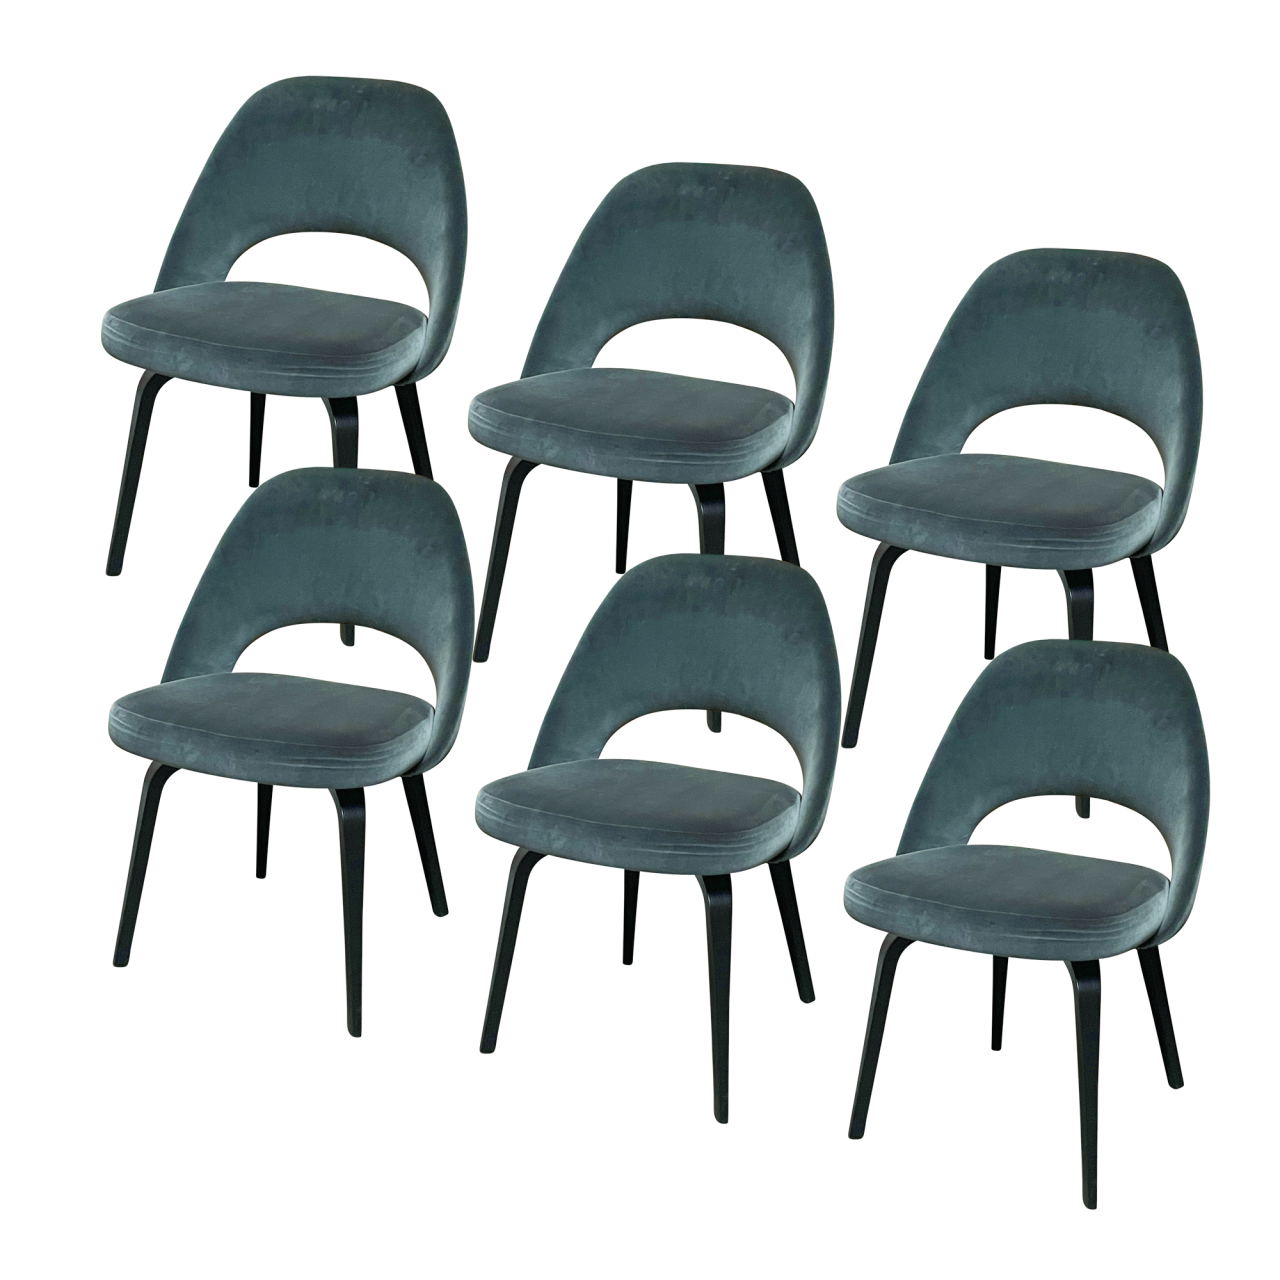 Saarinen Konferenzstühle 6 Stühle im Set